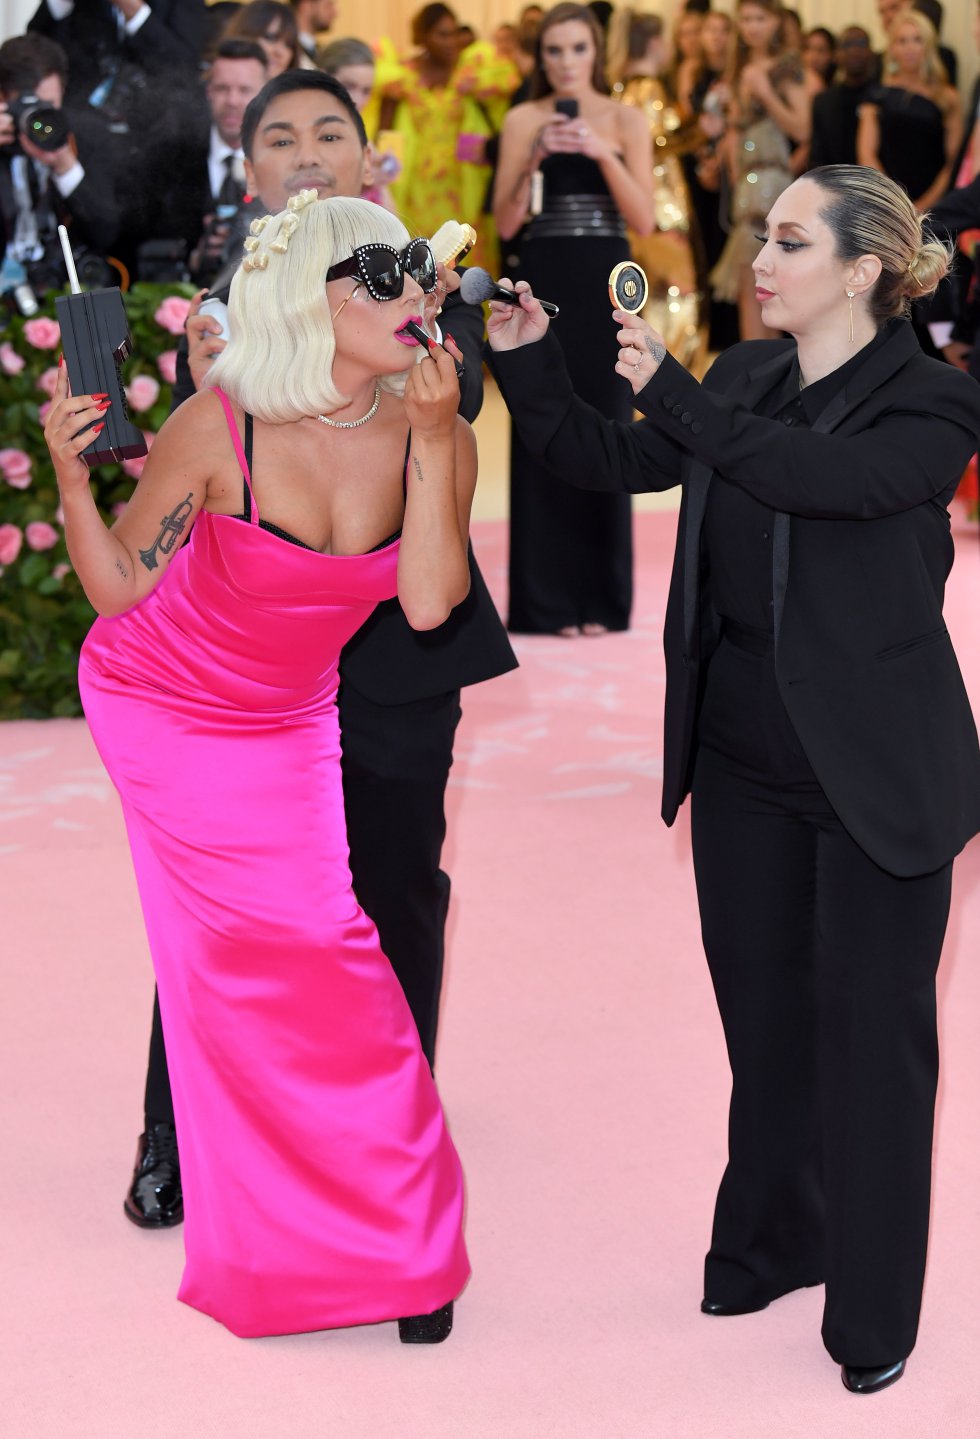 En su tercer estilismo, Lady Gaga perdió tela para lucir un vestido más ajustado. Su performance incluía retoques de maquillaje.